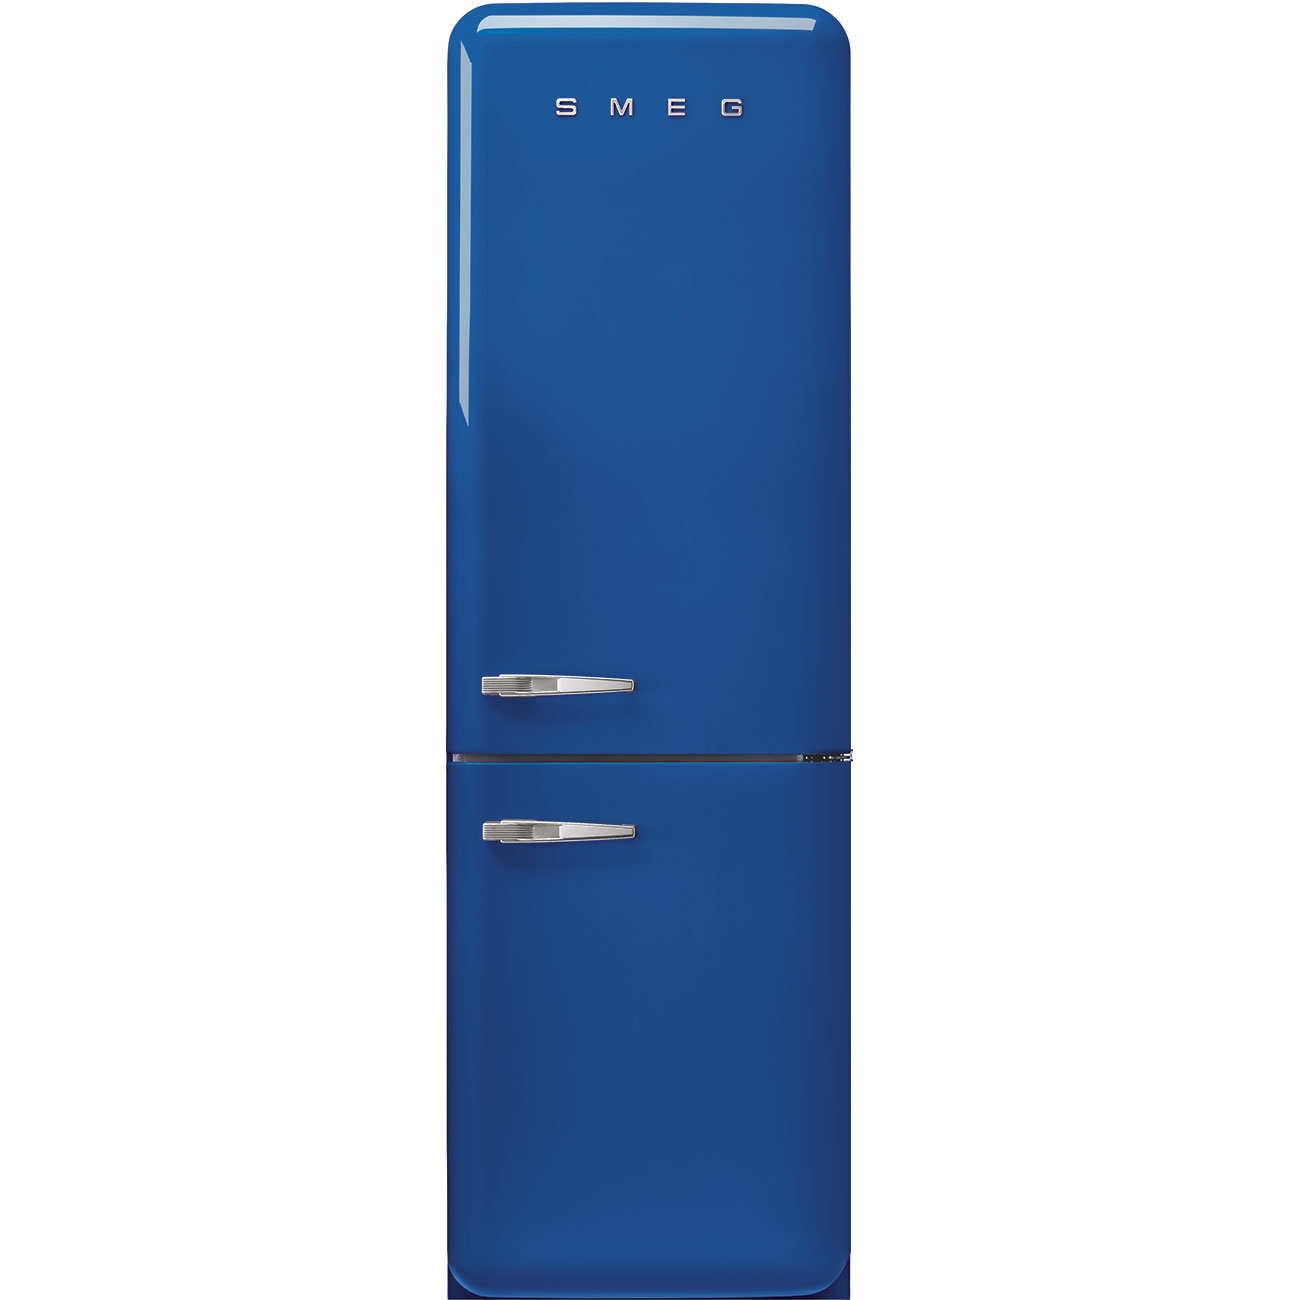 Blue refrigerator - Smeg_1